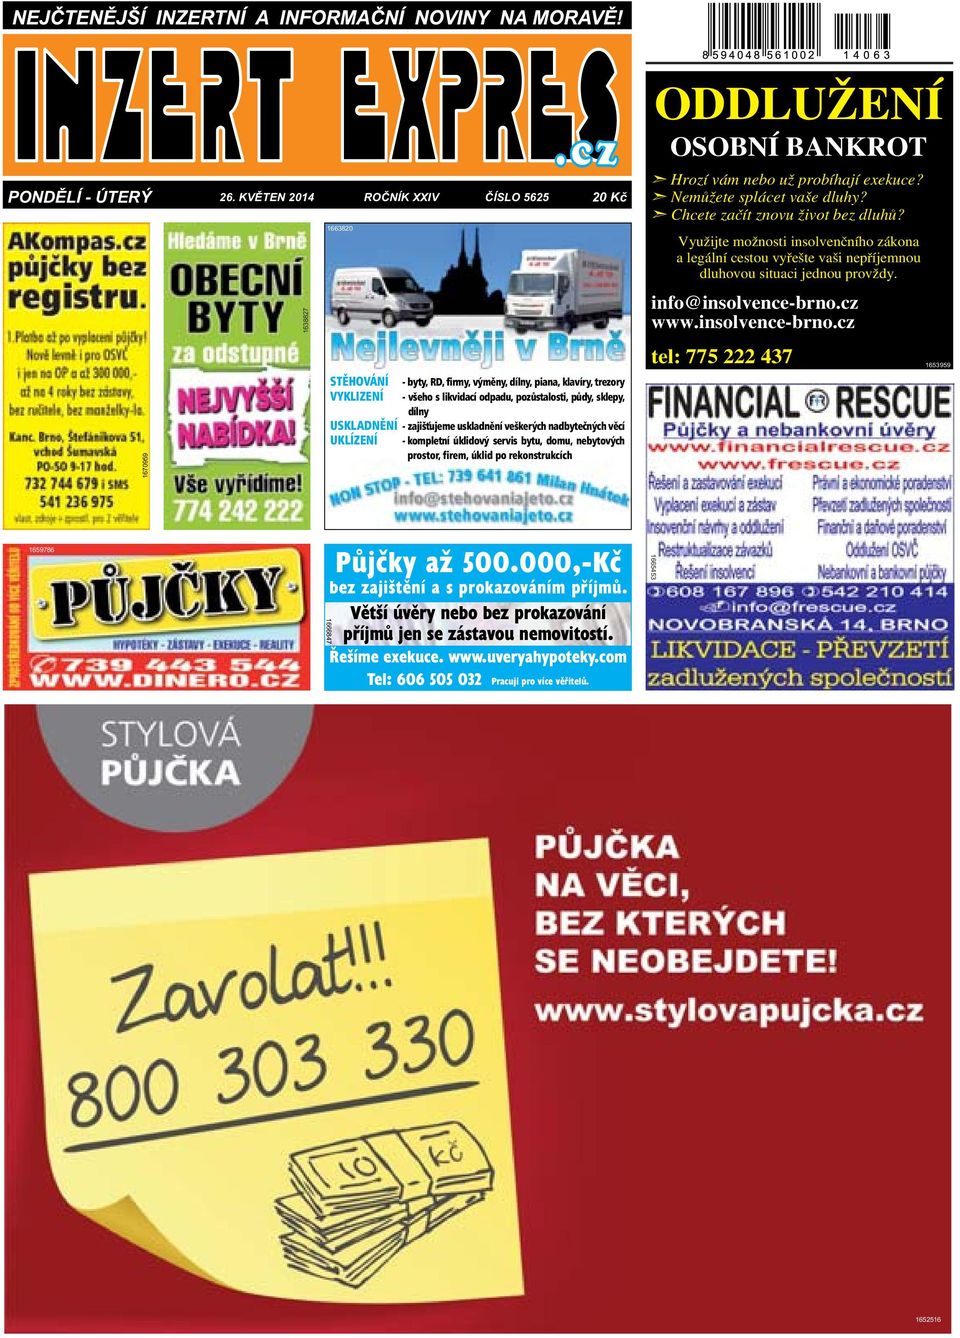 cz www.insolvence-brno.